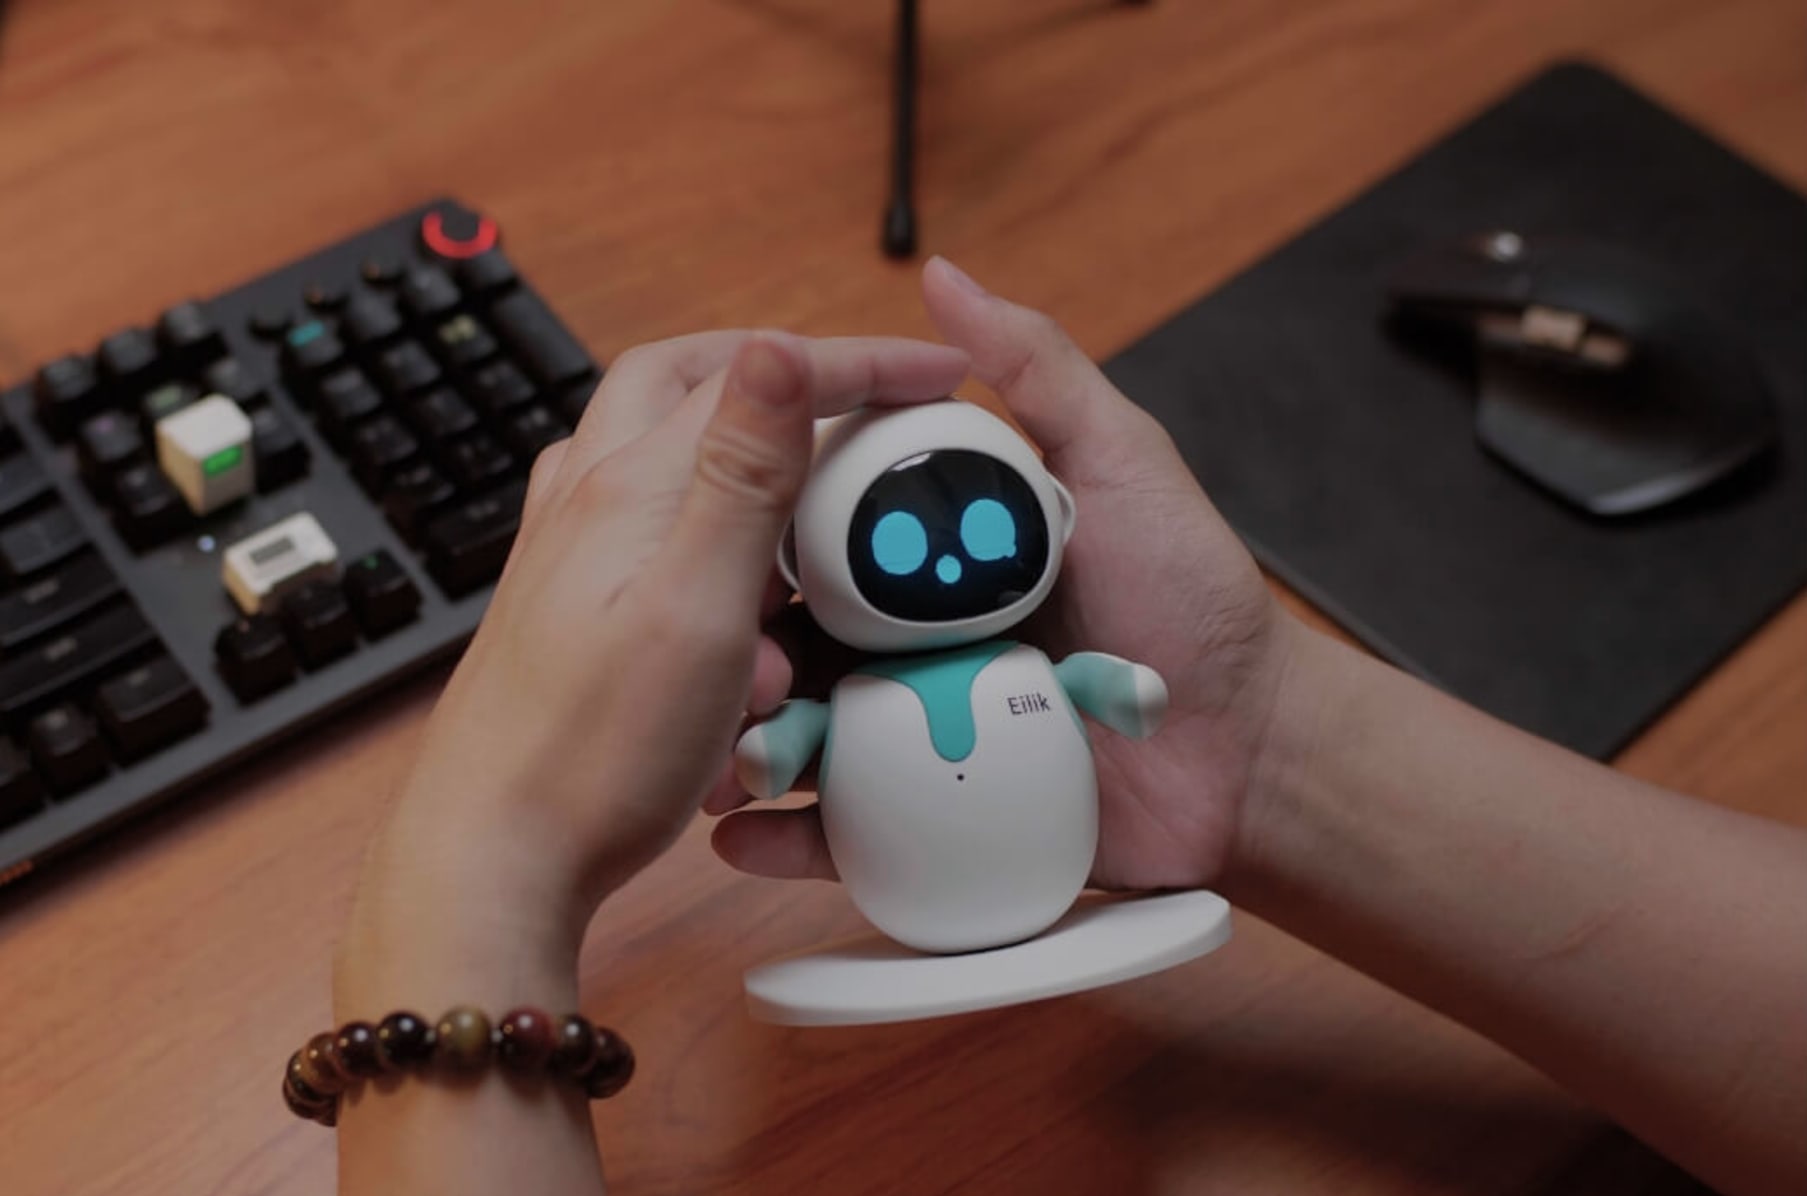 Eilik robot companion hits Kickstarter - Geeky Gadgets